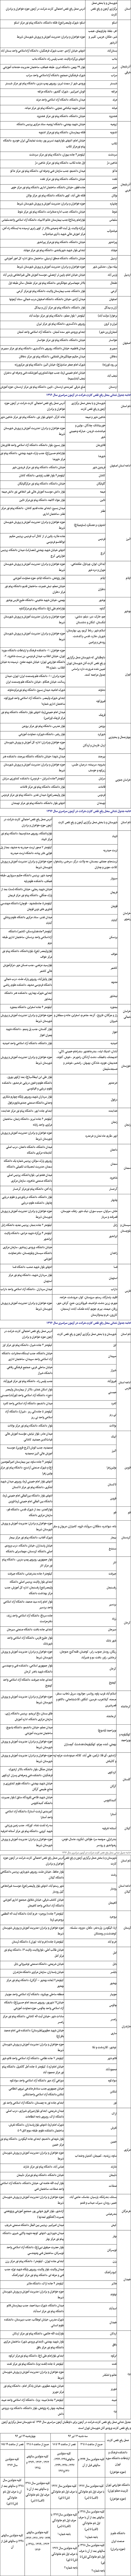 جزئیات محل رفع نقص «کارت کنکور ۹۶» در ۳۰ استان منتشر شد